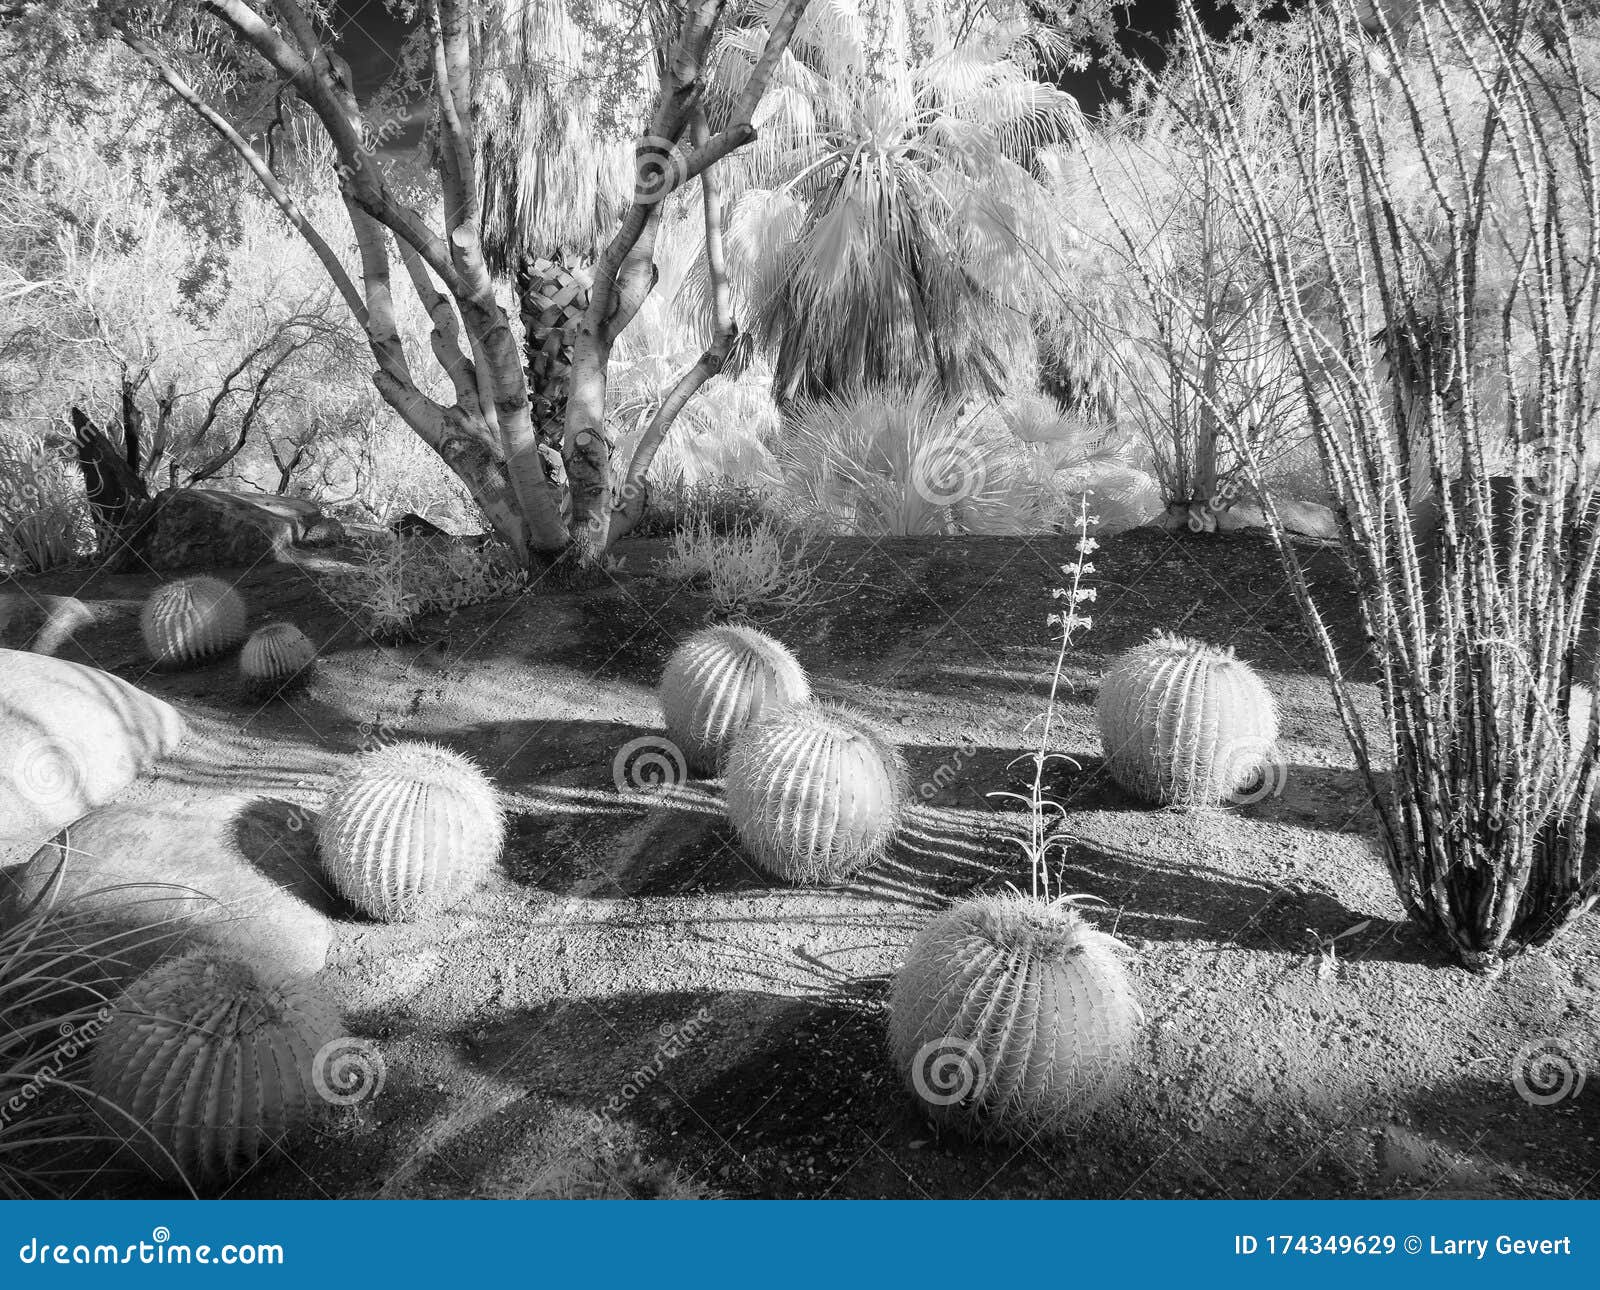 palm desert garden park scene, infrared